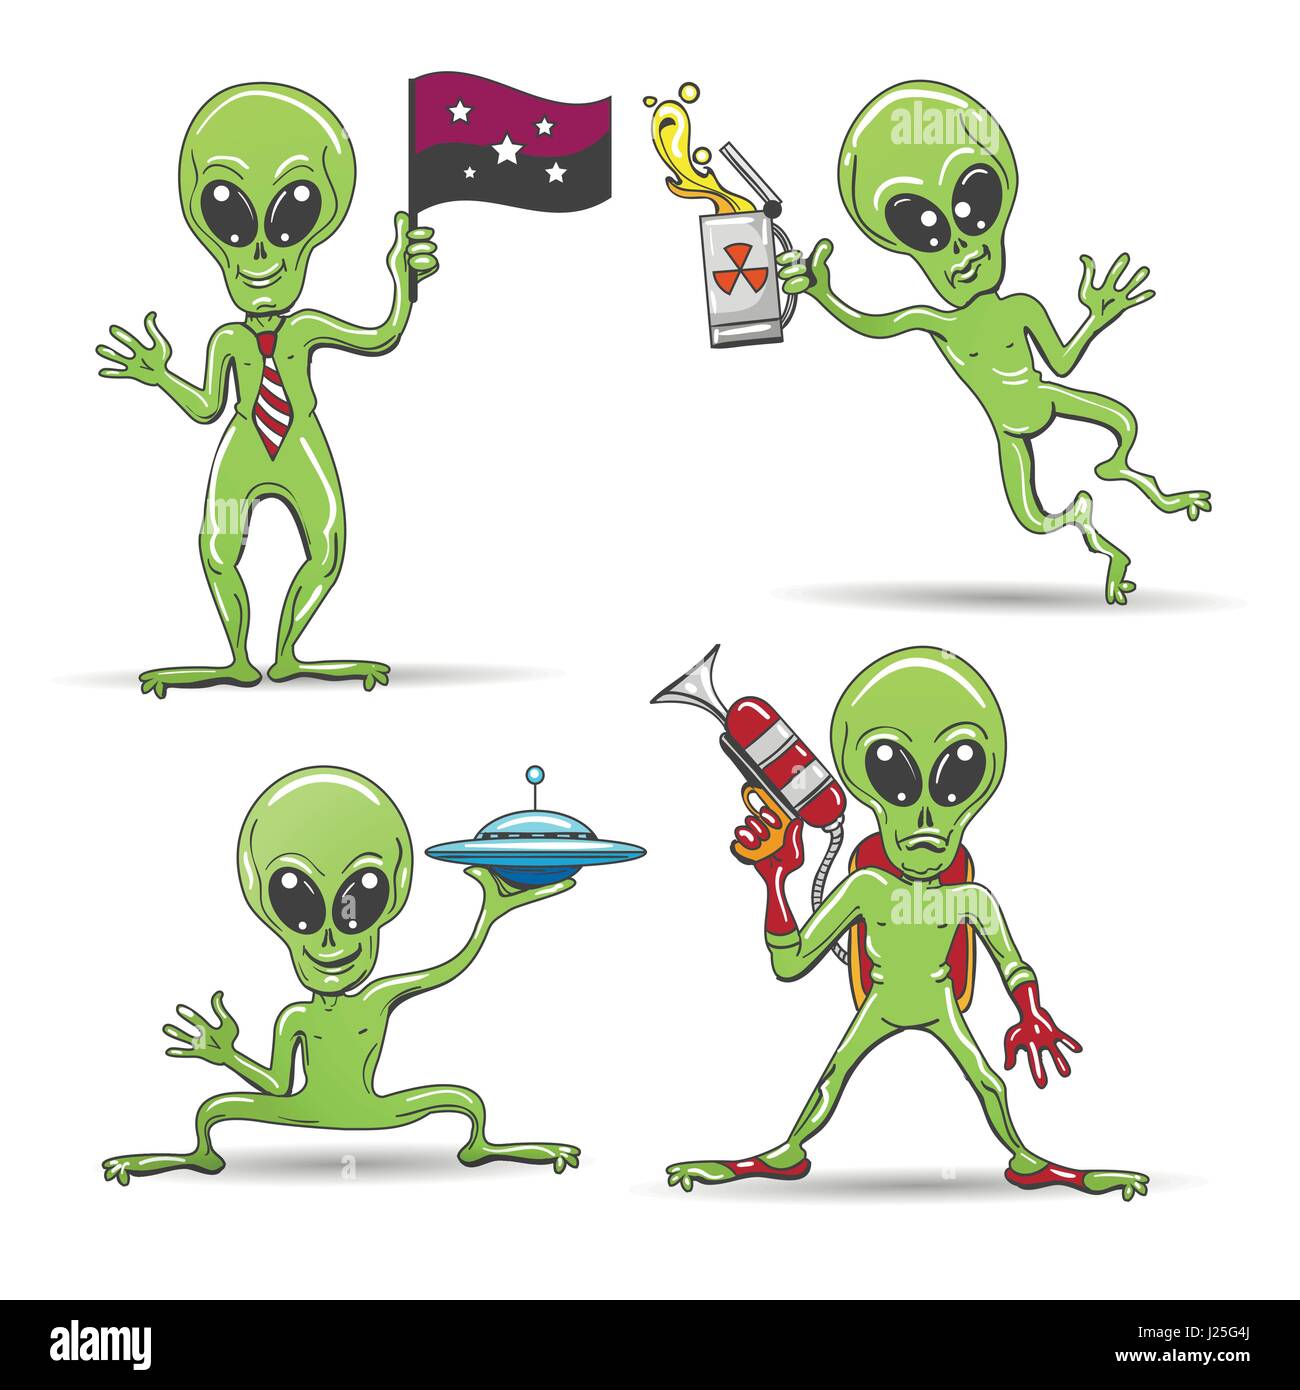 Cartoon-lustige Aliens-Satz. Grüne Haut Ausländern mit einer Laserpistole alien Uran, Pocket fliegende Untertasse und Bier Galaxie Flagge. Vektor-Illustration. Stock Vektor